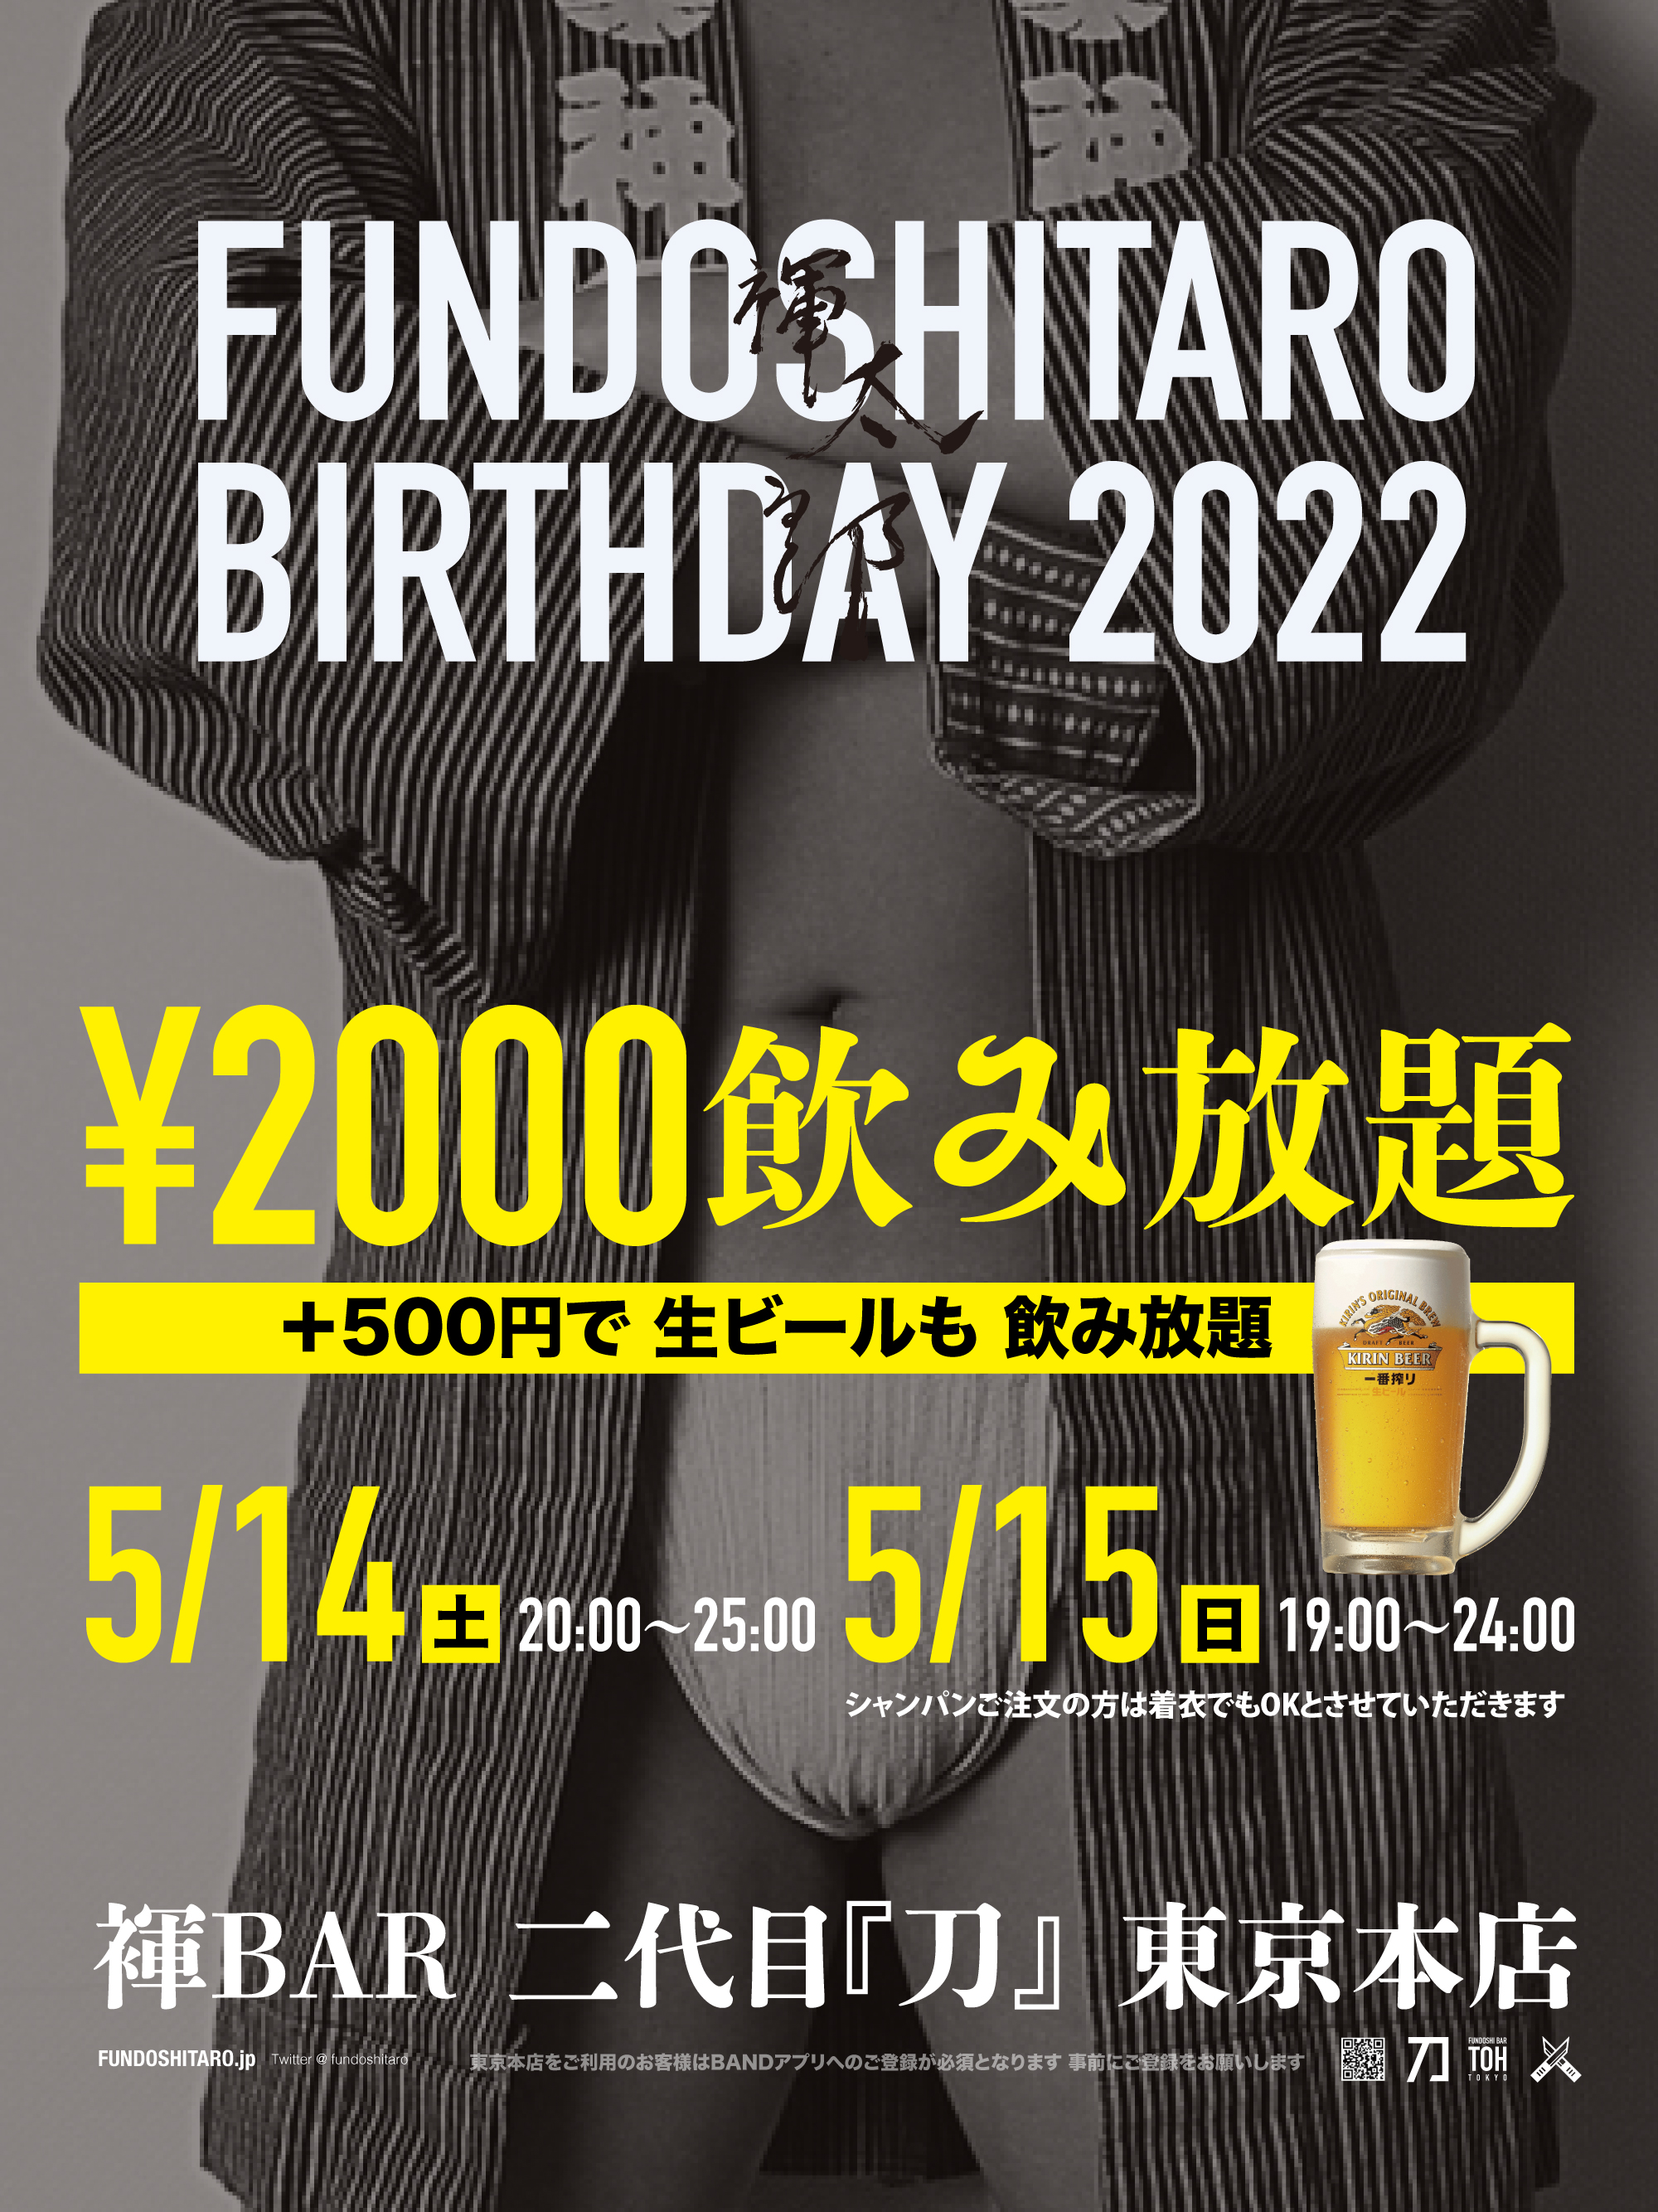 FUNDOSHITARO BIRTHDAY 2022